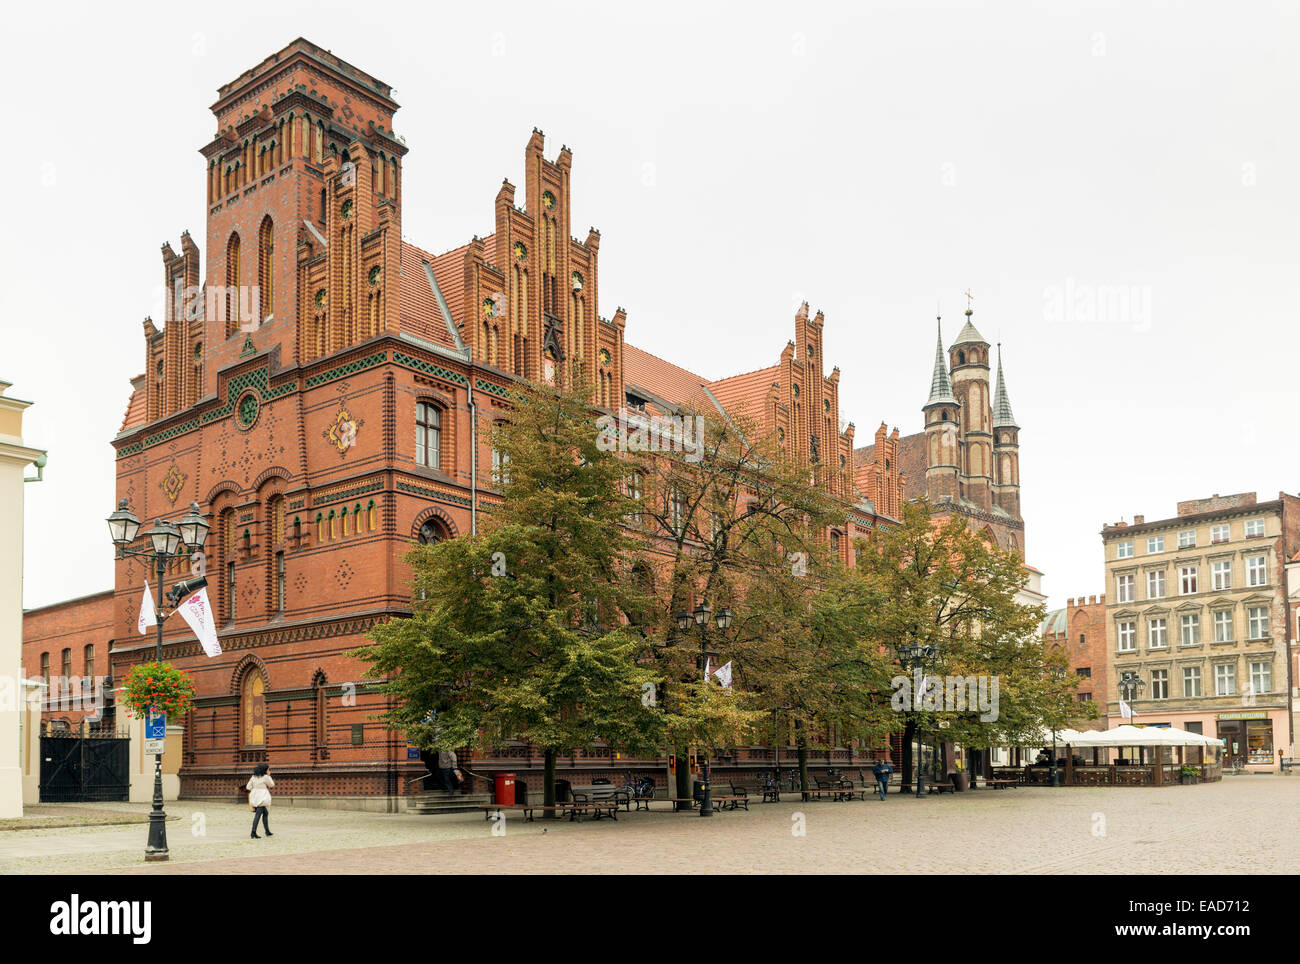 TORUN, Polen - 23. Oktober 2014: Die mittelalterliche Stadt, Geburtsort des Nicolaus Copernicus, ist unter den UNESCO-Welt-Welterbe aufgeführt Stockfoto